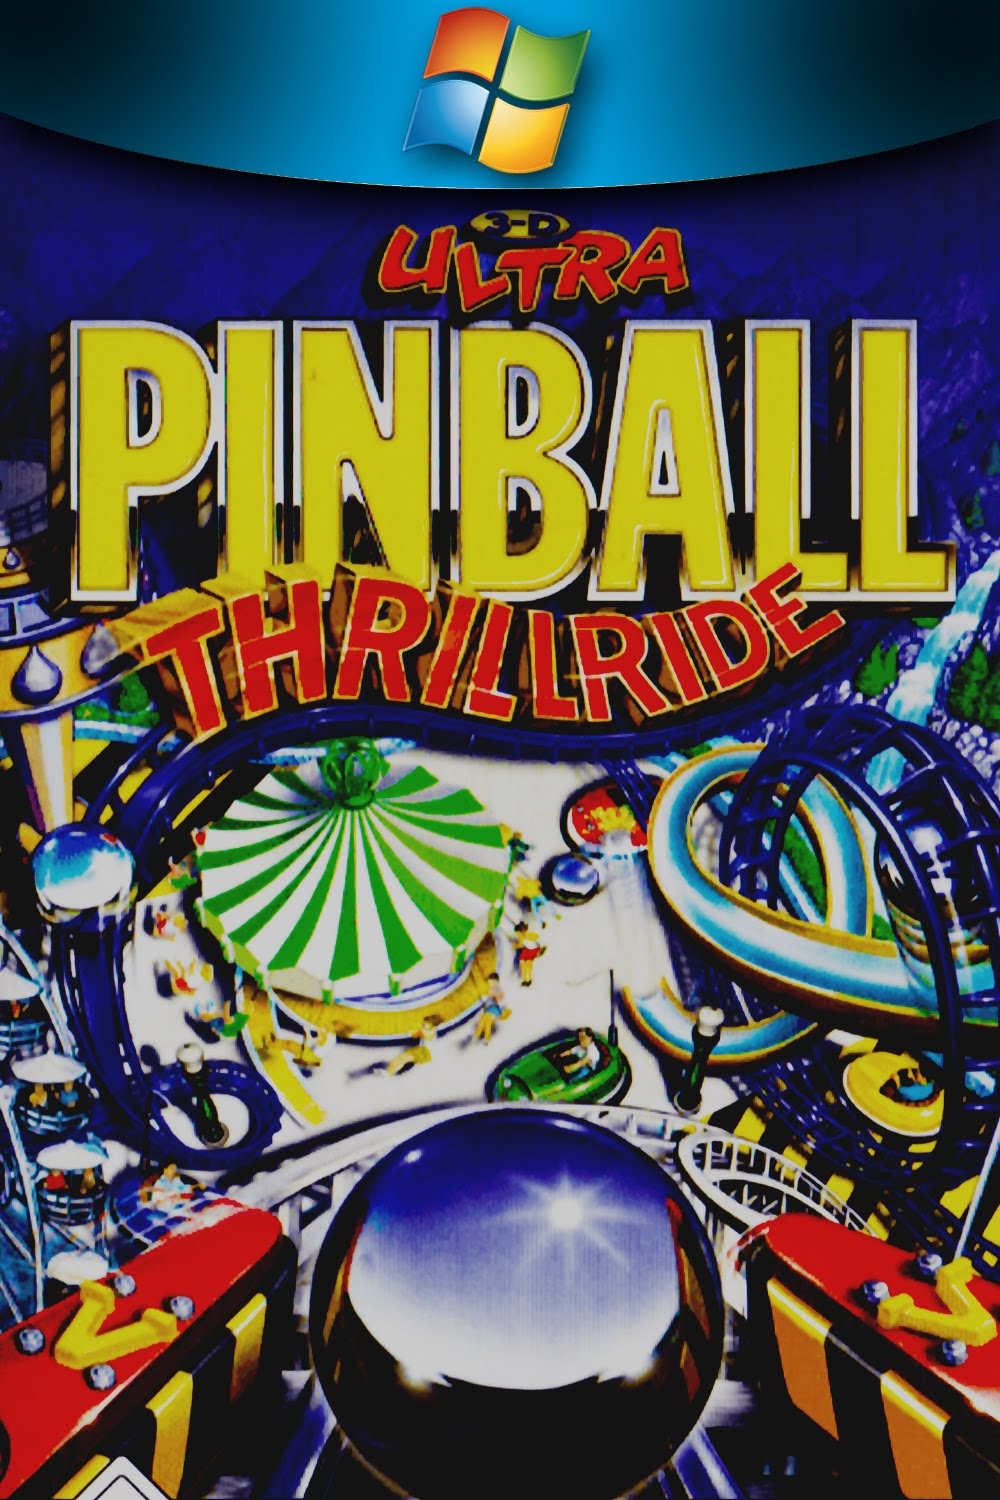 sierra 3d ultra pinball thrillride